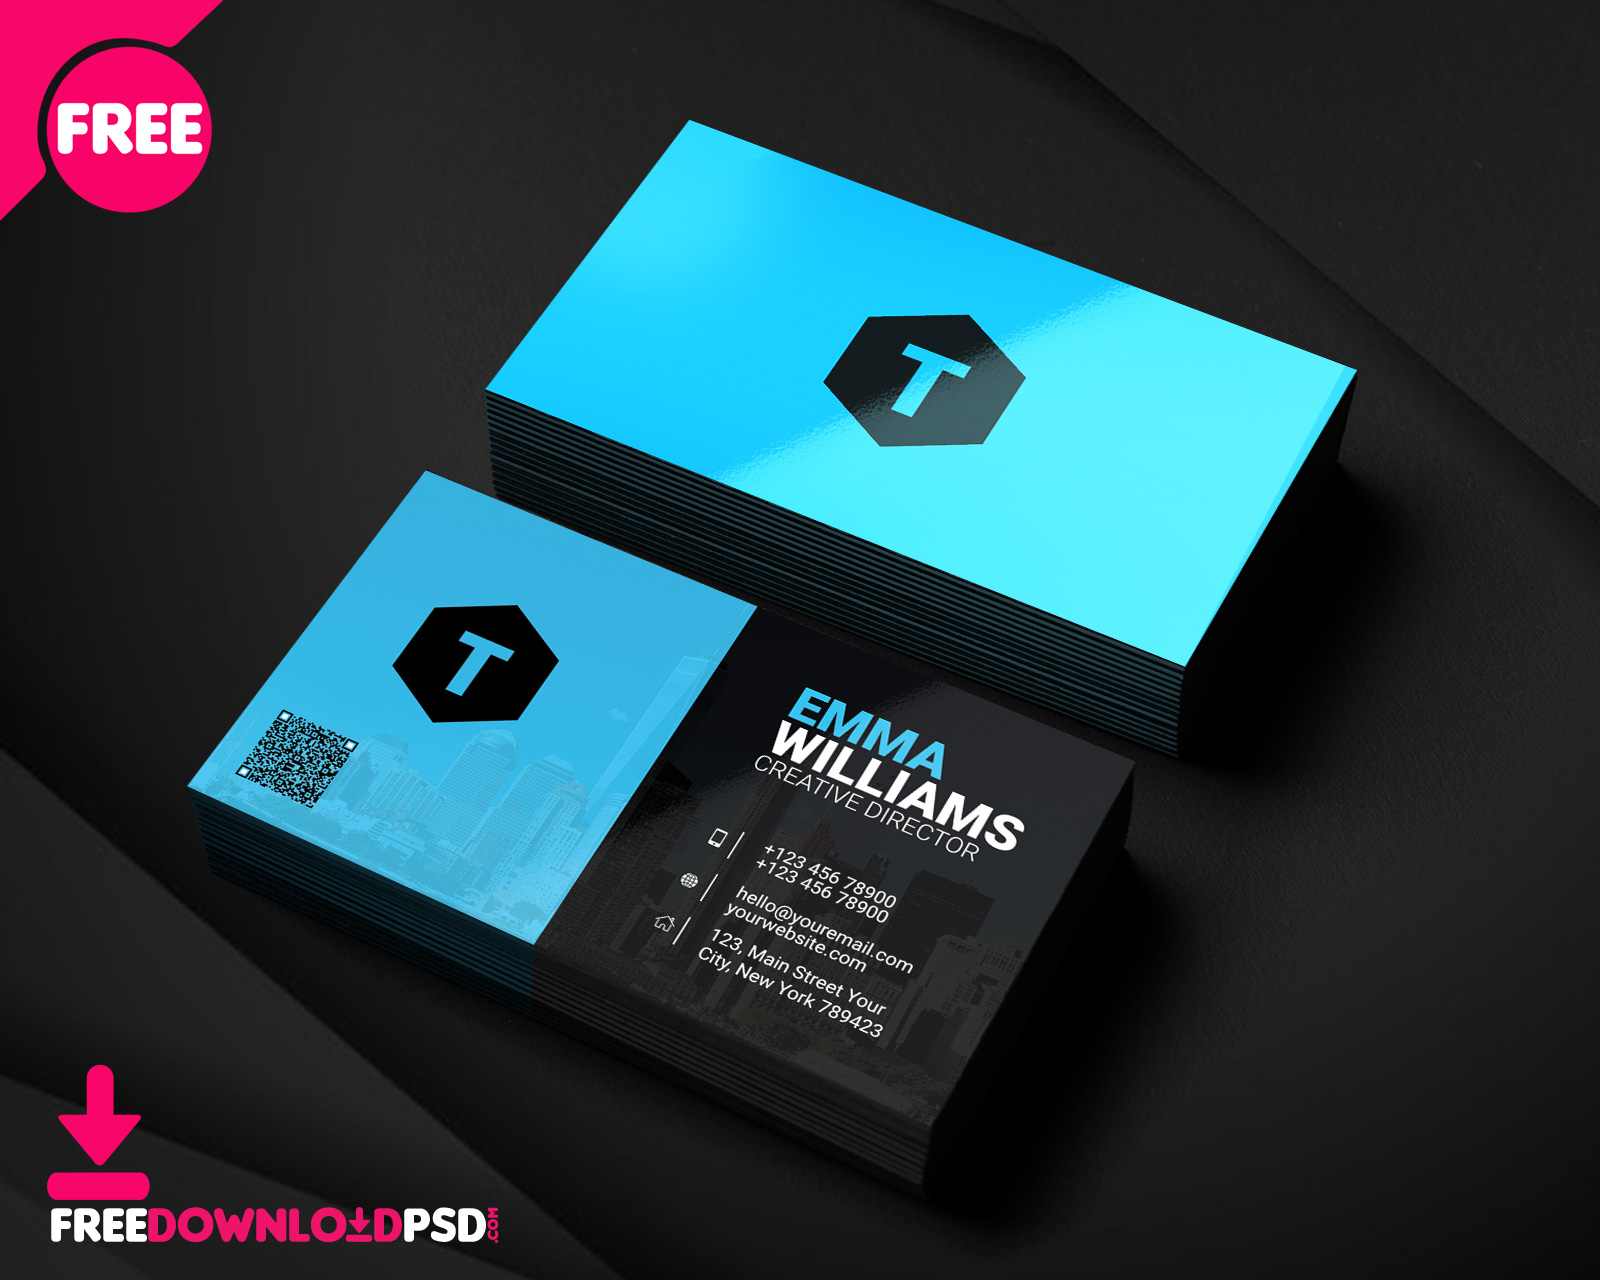 Creative Agency Business Card Psd | Freedownloadpsd Within Creative Business Card Templates Psd